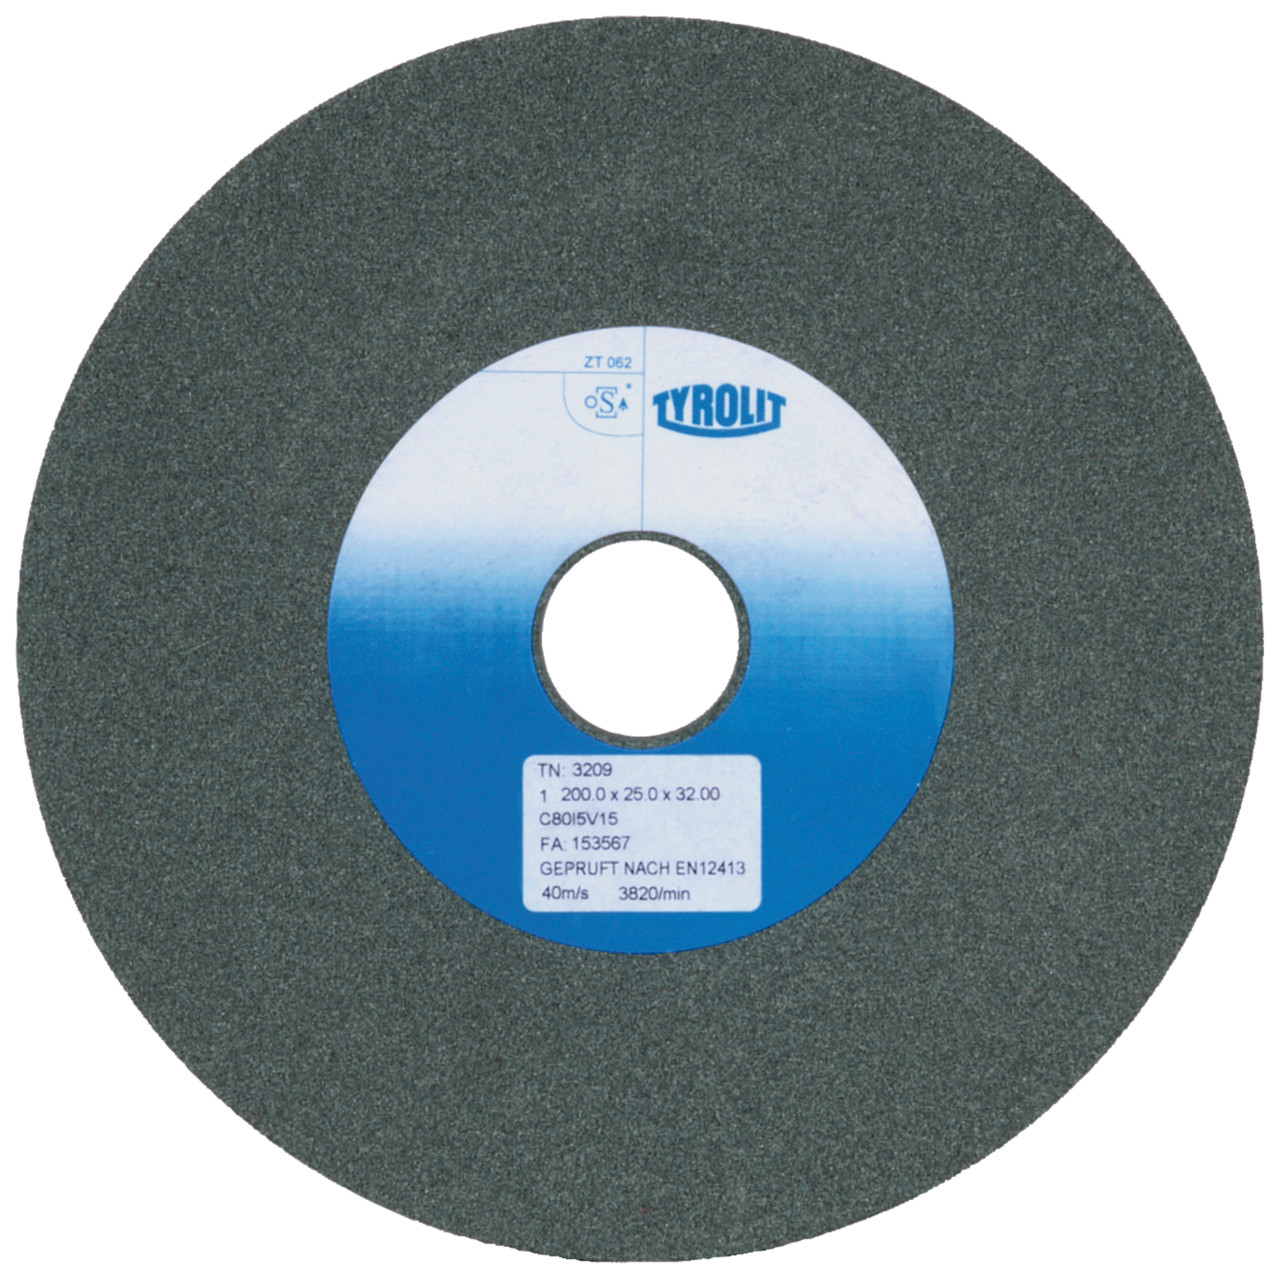 Tyrolit Discos abrasivos cerámicos convencionales DxDxH 150x20x32 Para metal duro y fundición, forma: 1, Art. 450328